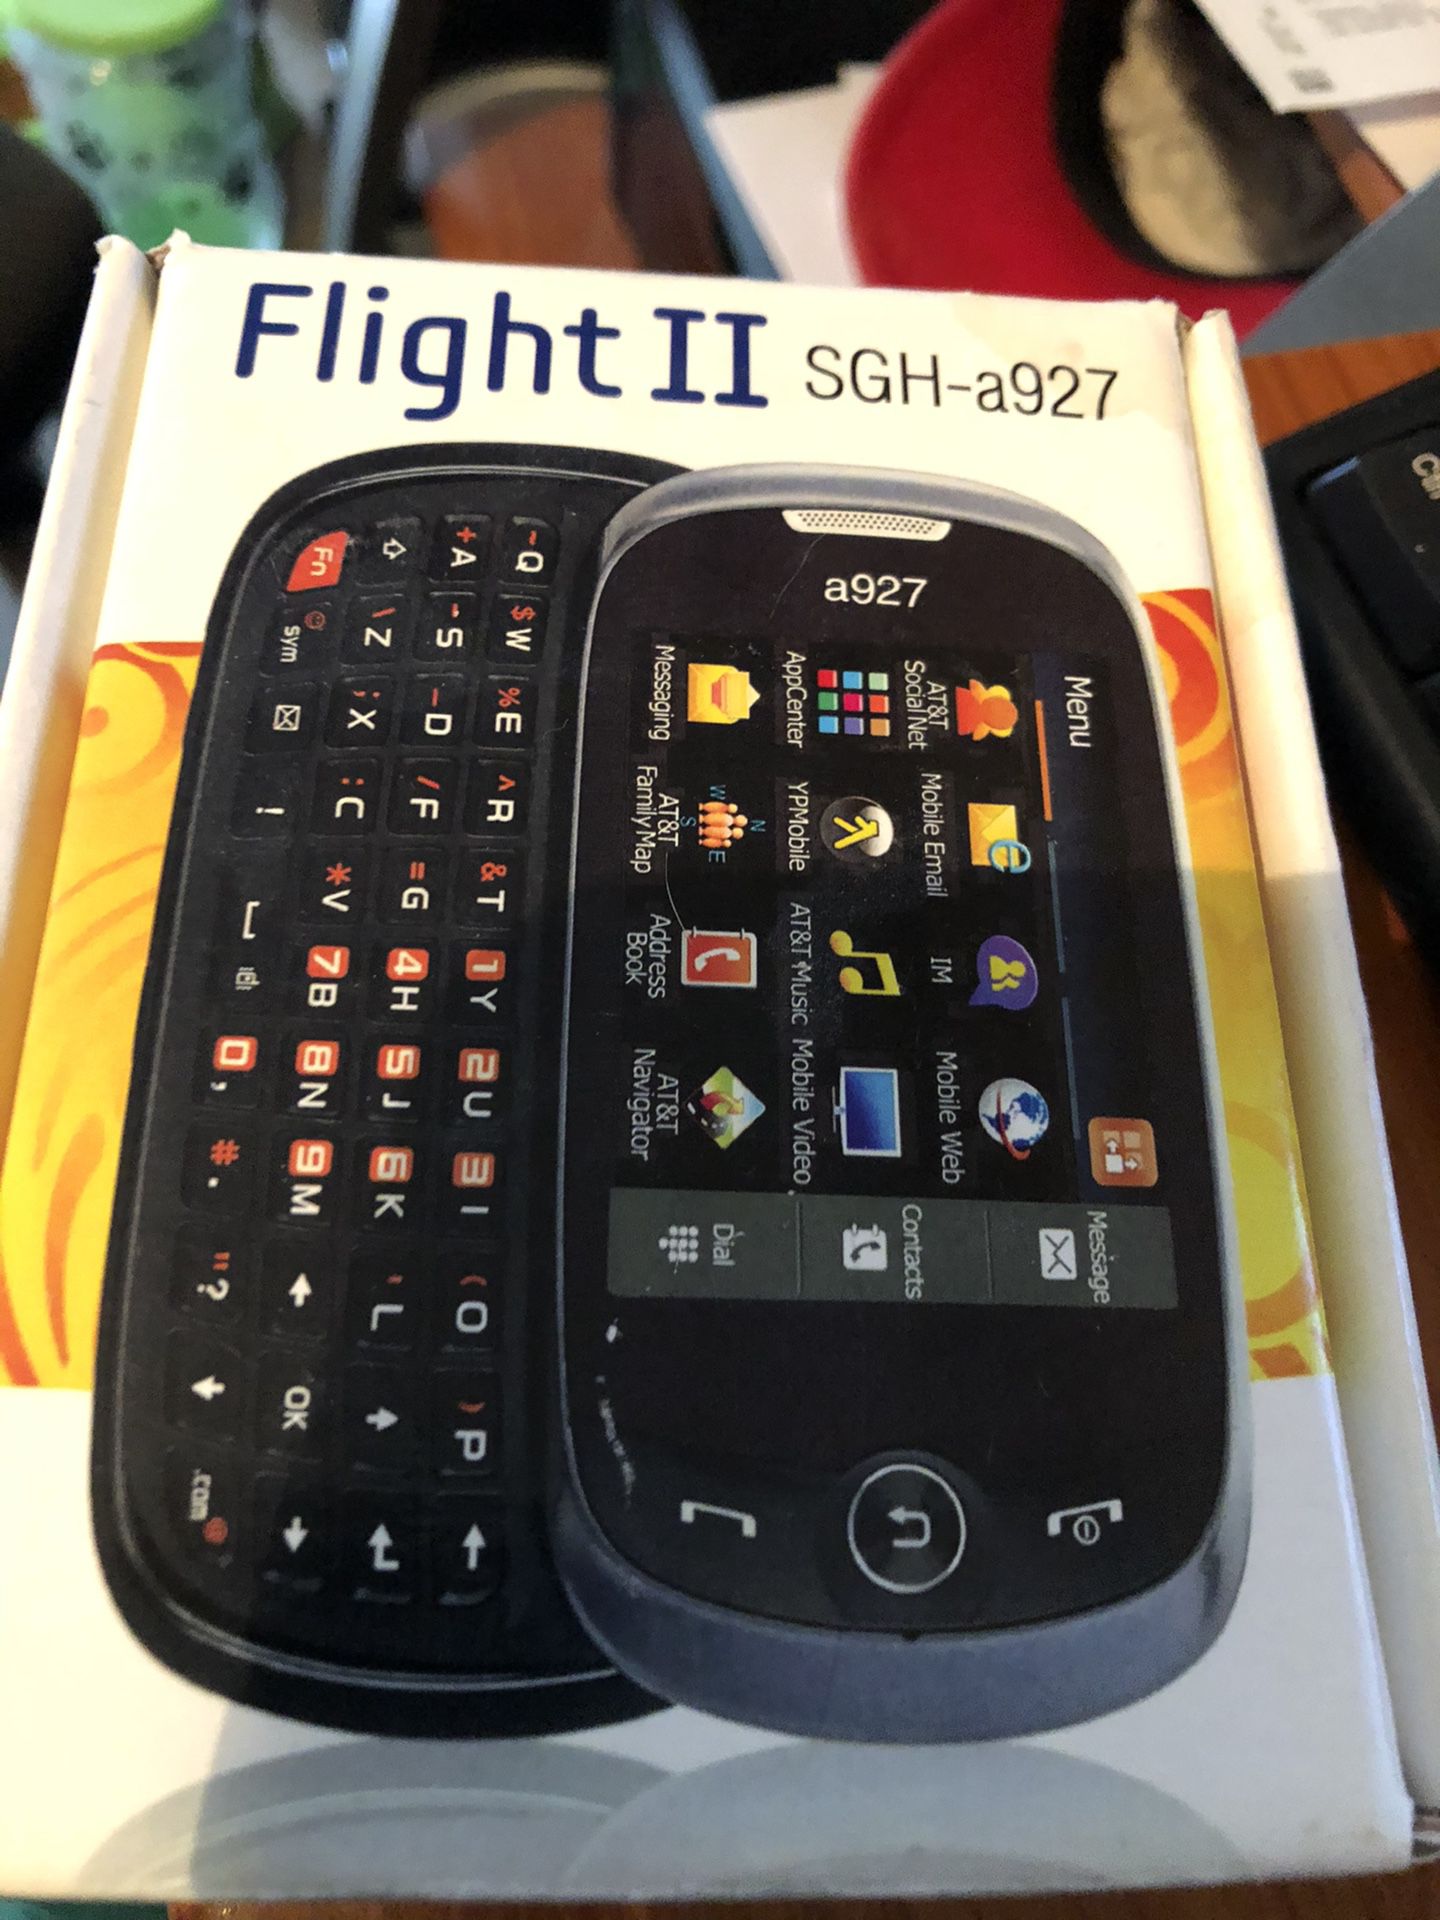 NEW ATT CELL PHONE SAMSUNG FLIGHT II